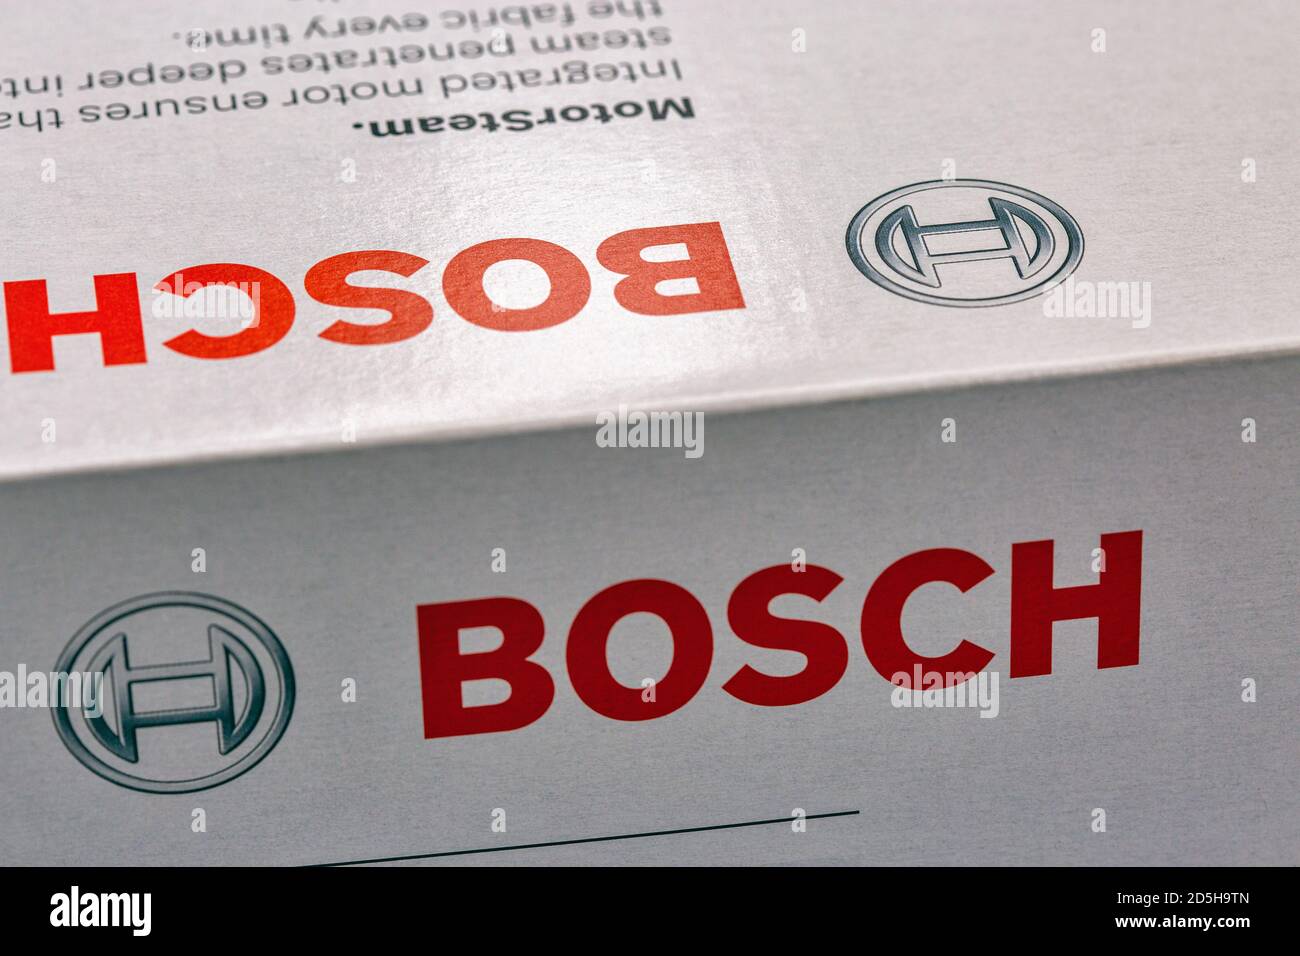 KIEV, UCRANIA - 22 DE AGOSTO de 2020: Sesión de estudio del logotipo de Bosch en una caja de electrodomésticos primer plano. Bosch es una multinacional alemana de ingeniería y electrónica Foto de stock